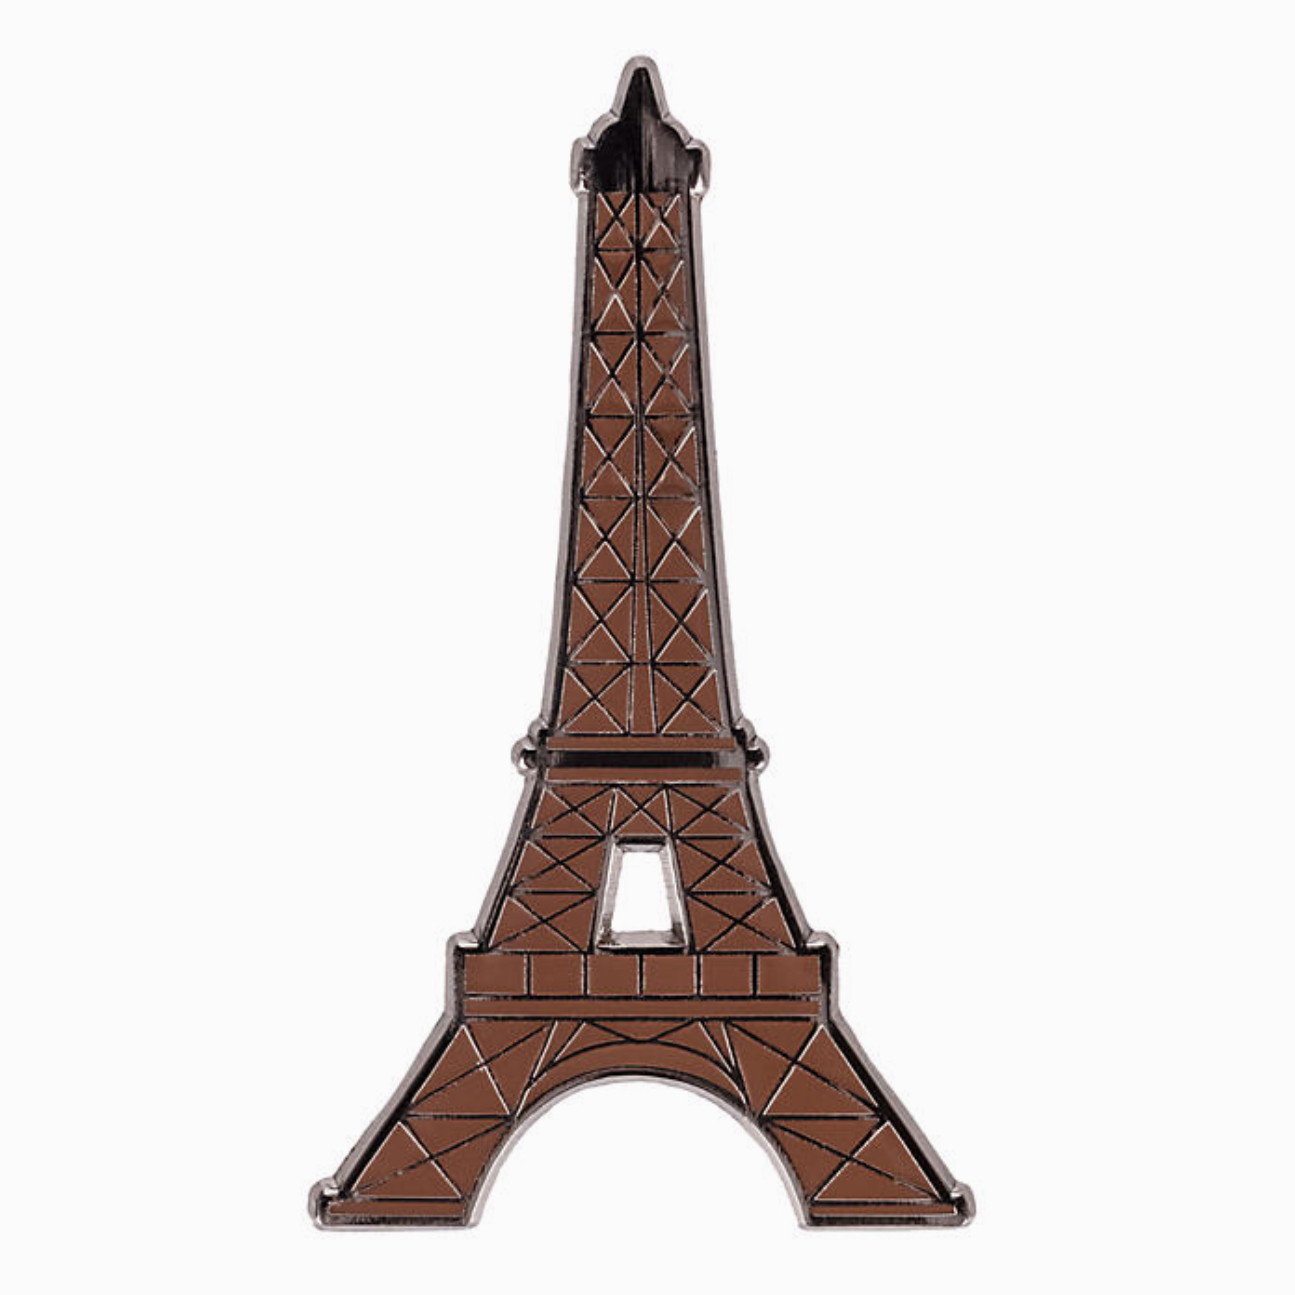 Aimant LOGO DLP TOUR EIFFEL Eiffel Tower Disneyland Paris MAGNET 